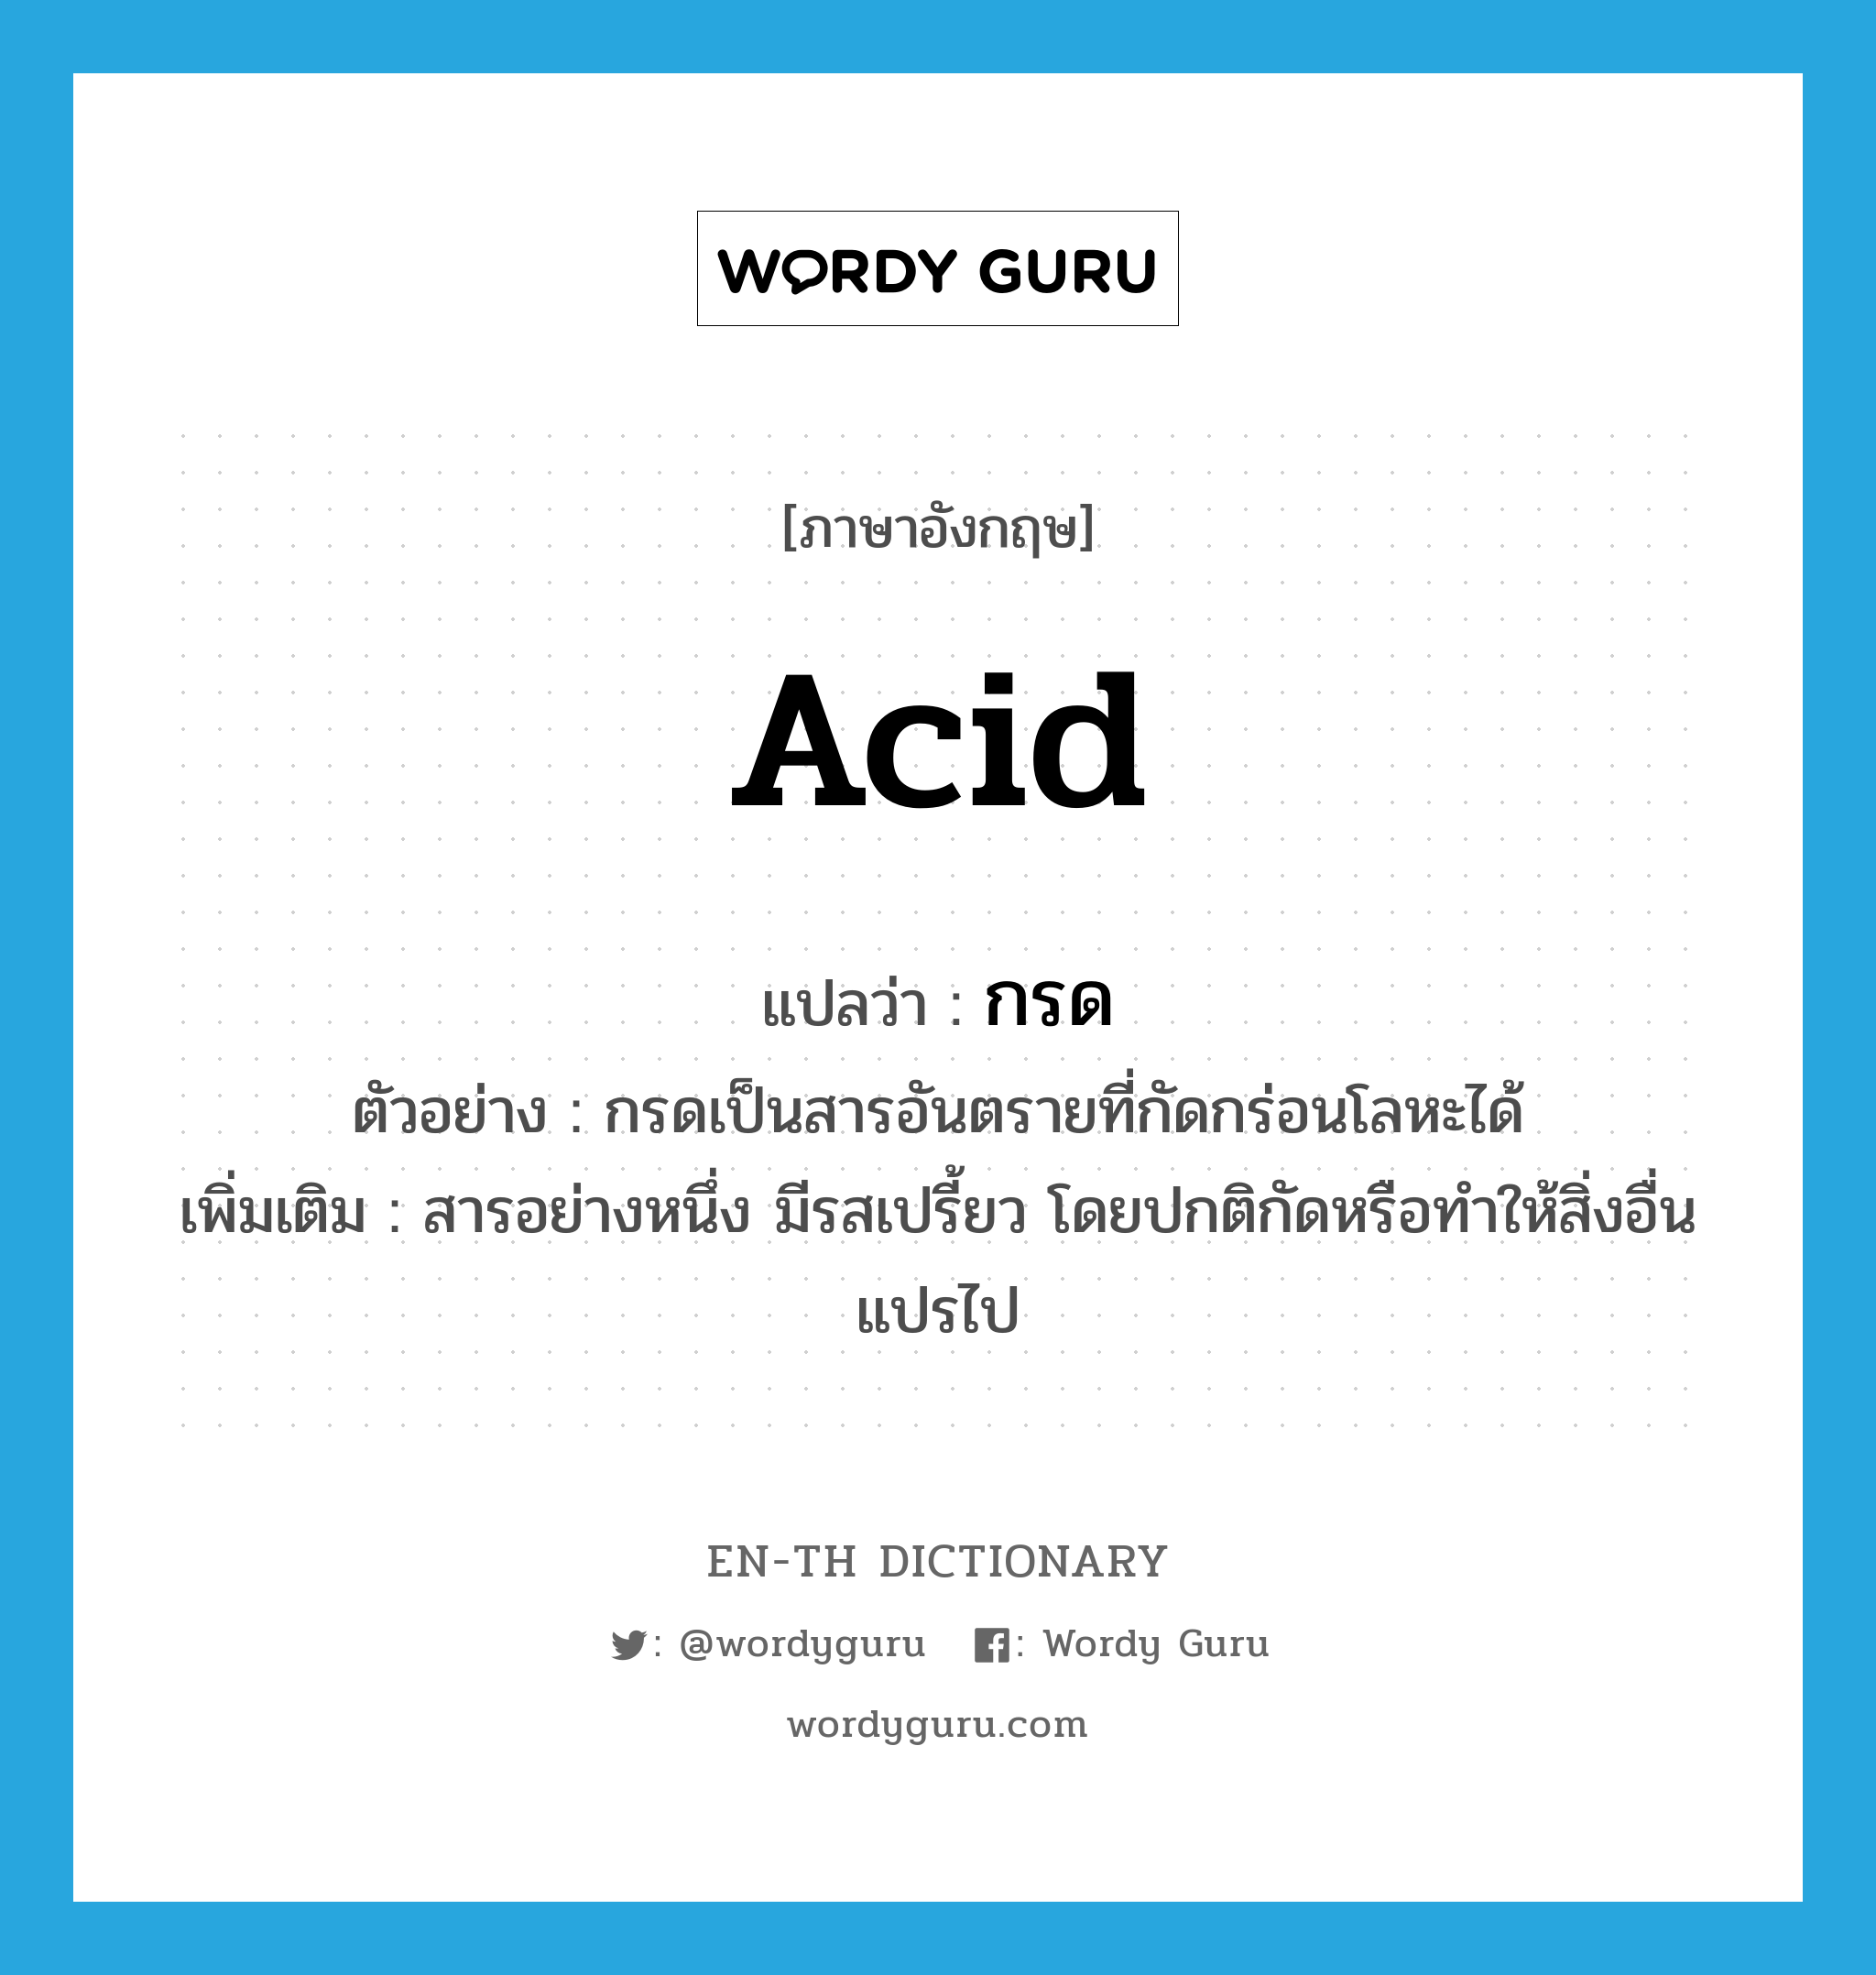 acid แปลว่า?, คำศัพท์ภาษาอังกฤษ acid แปลว่า กรด ประเภท N ตัวอย่าง กรดเป็นสารอันตรายที่กัดกร่อนโลหะได้ เพิ่มเติม สารอย่างหนึ่ง มีรสเปรี้ยว โดยปกติกัดหรือทำให้สิ่งอื่นแปรไป หมวด N